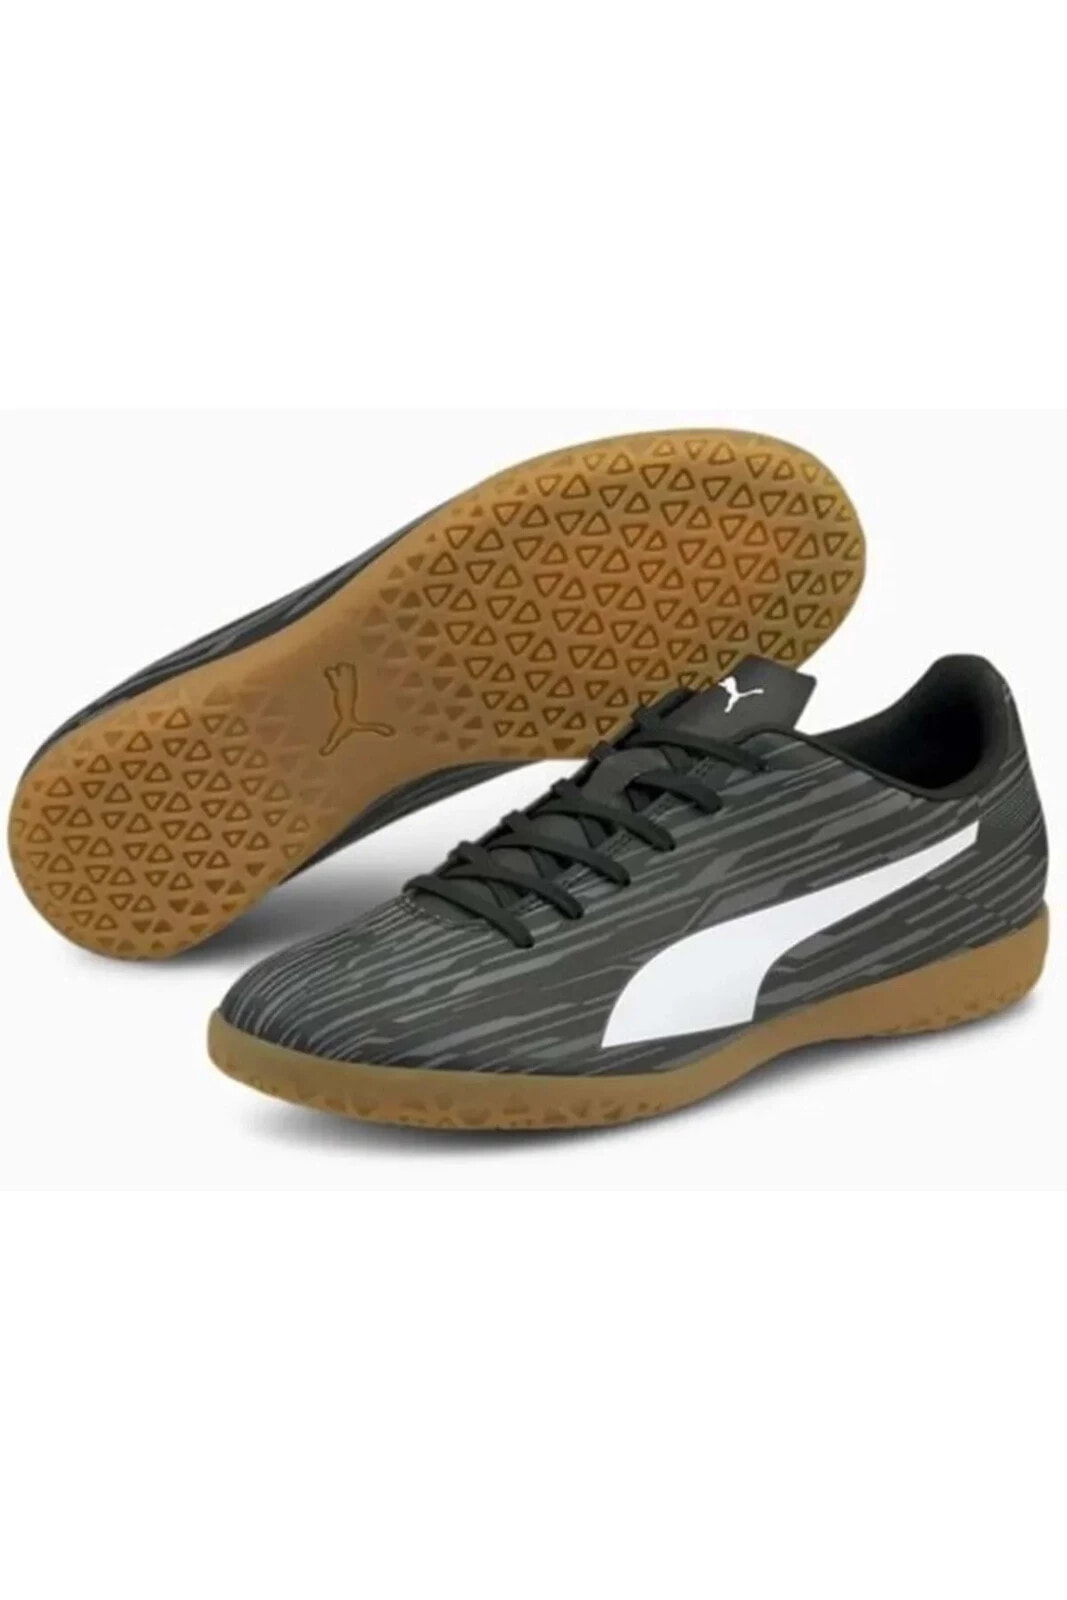 Rapido Iıı It 106575-02 Unisex Futsal Ayakkabısı Siyah